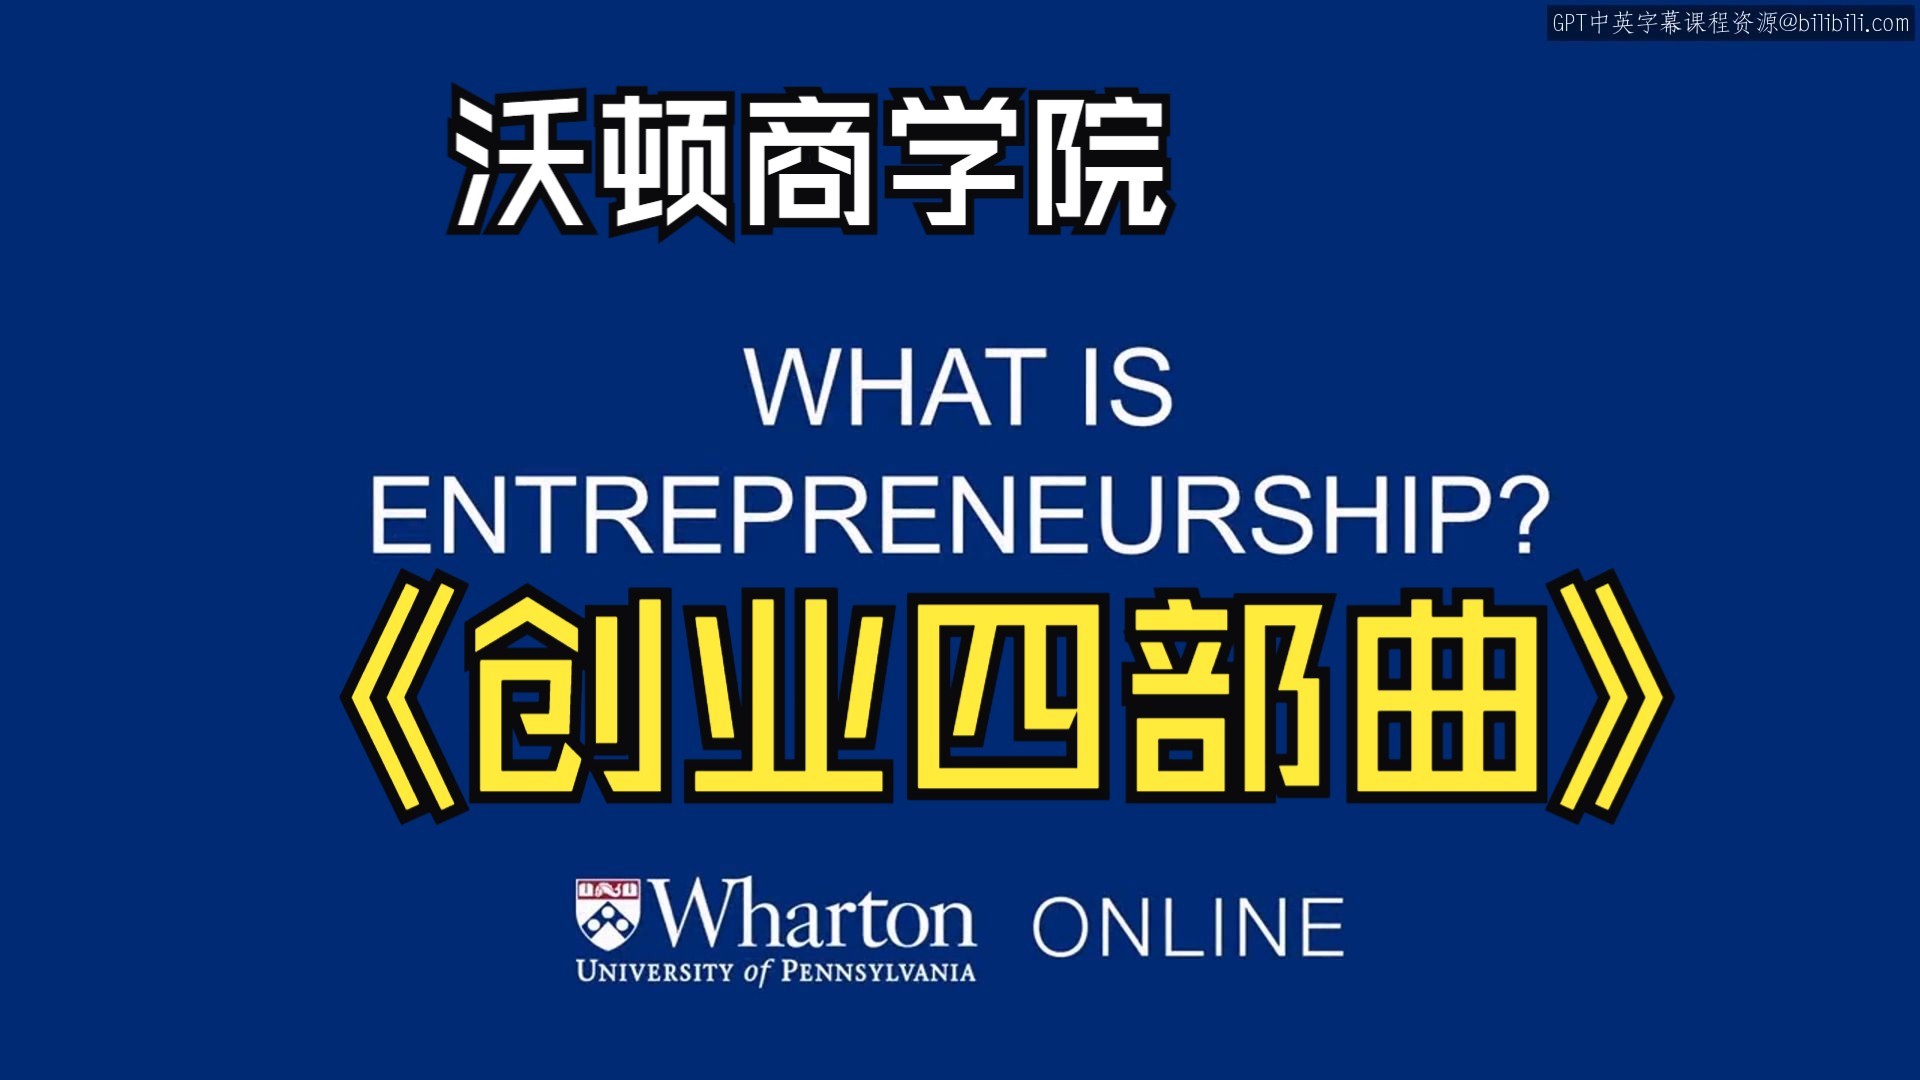 沃顿商学院《创业（创造机会、启动项目、增长策略、融资盈利、毕业项目）|Entrepreneurship 》中英字幕